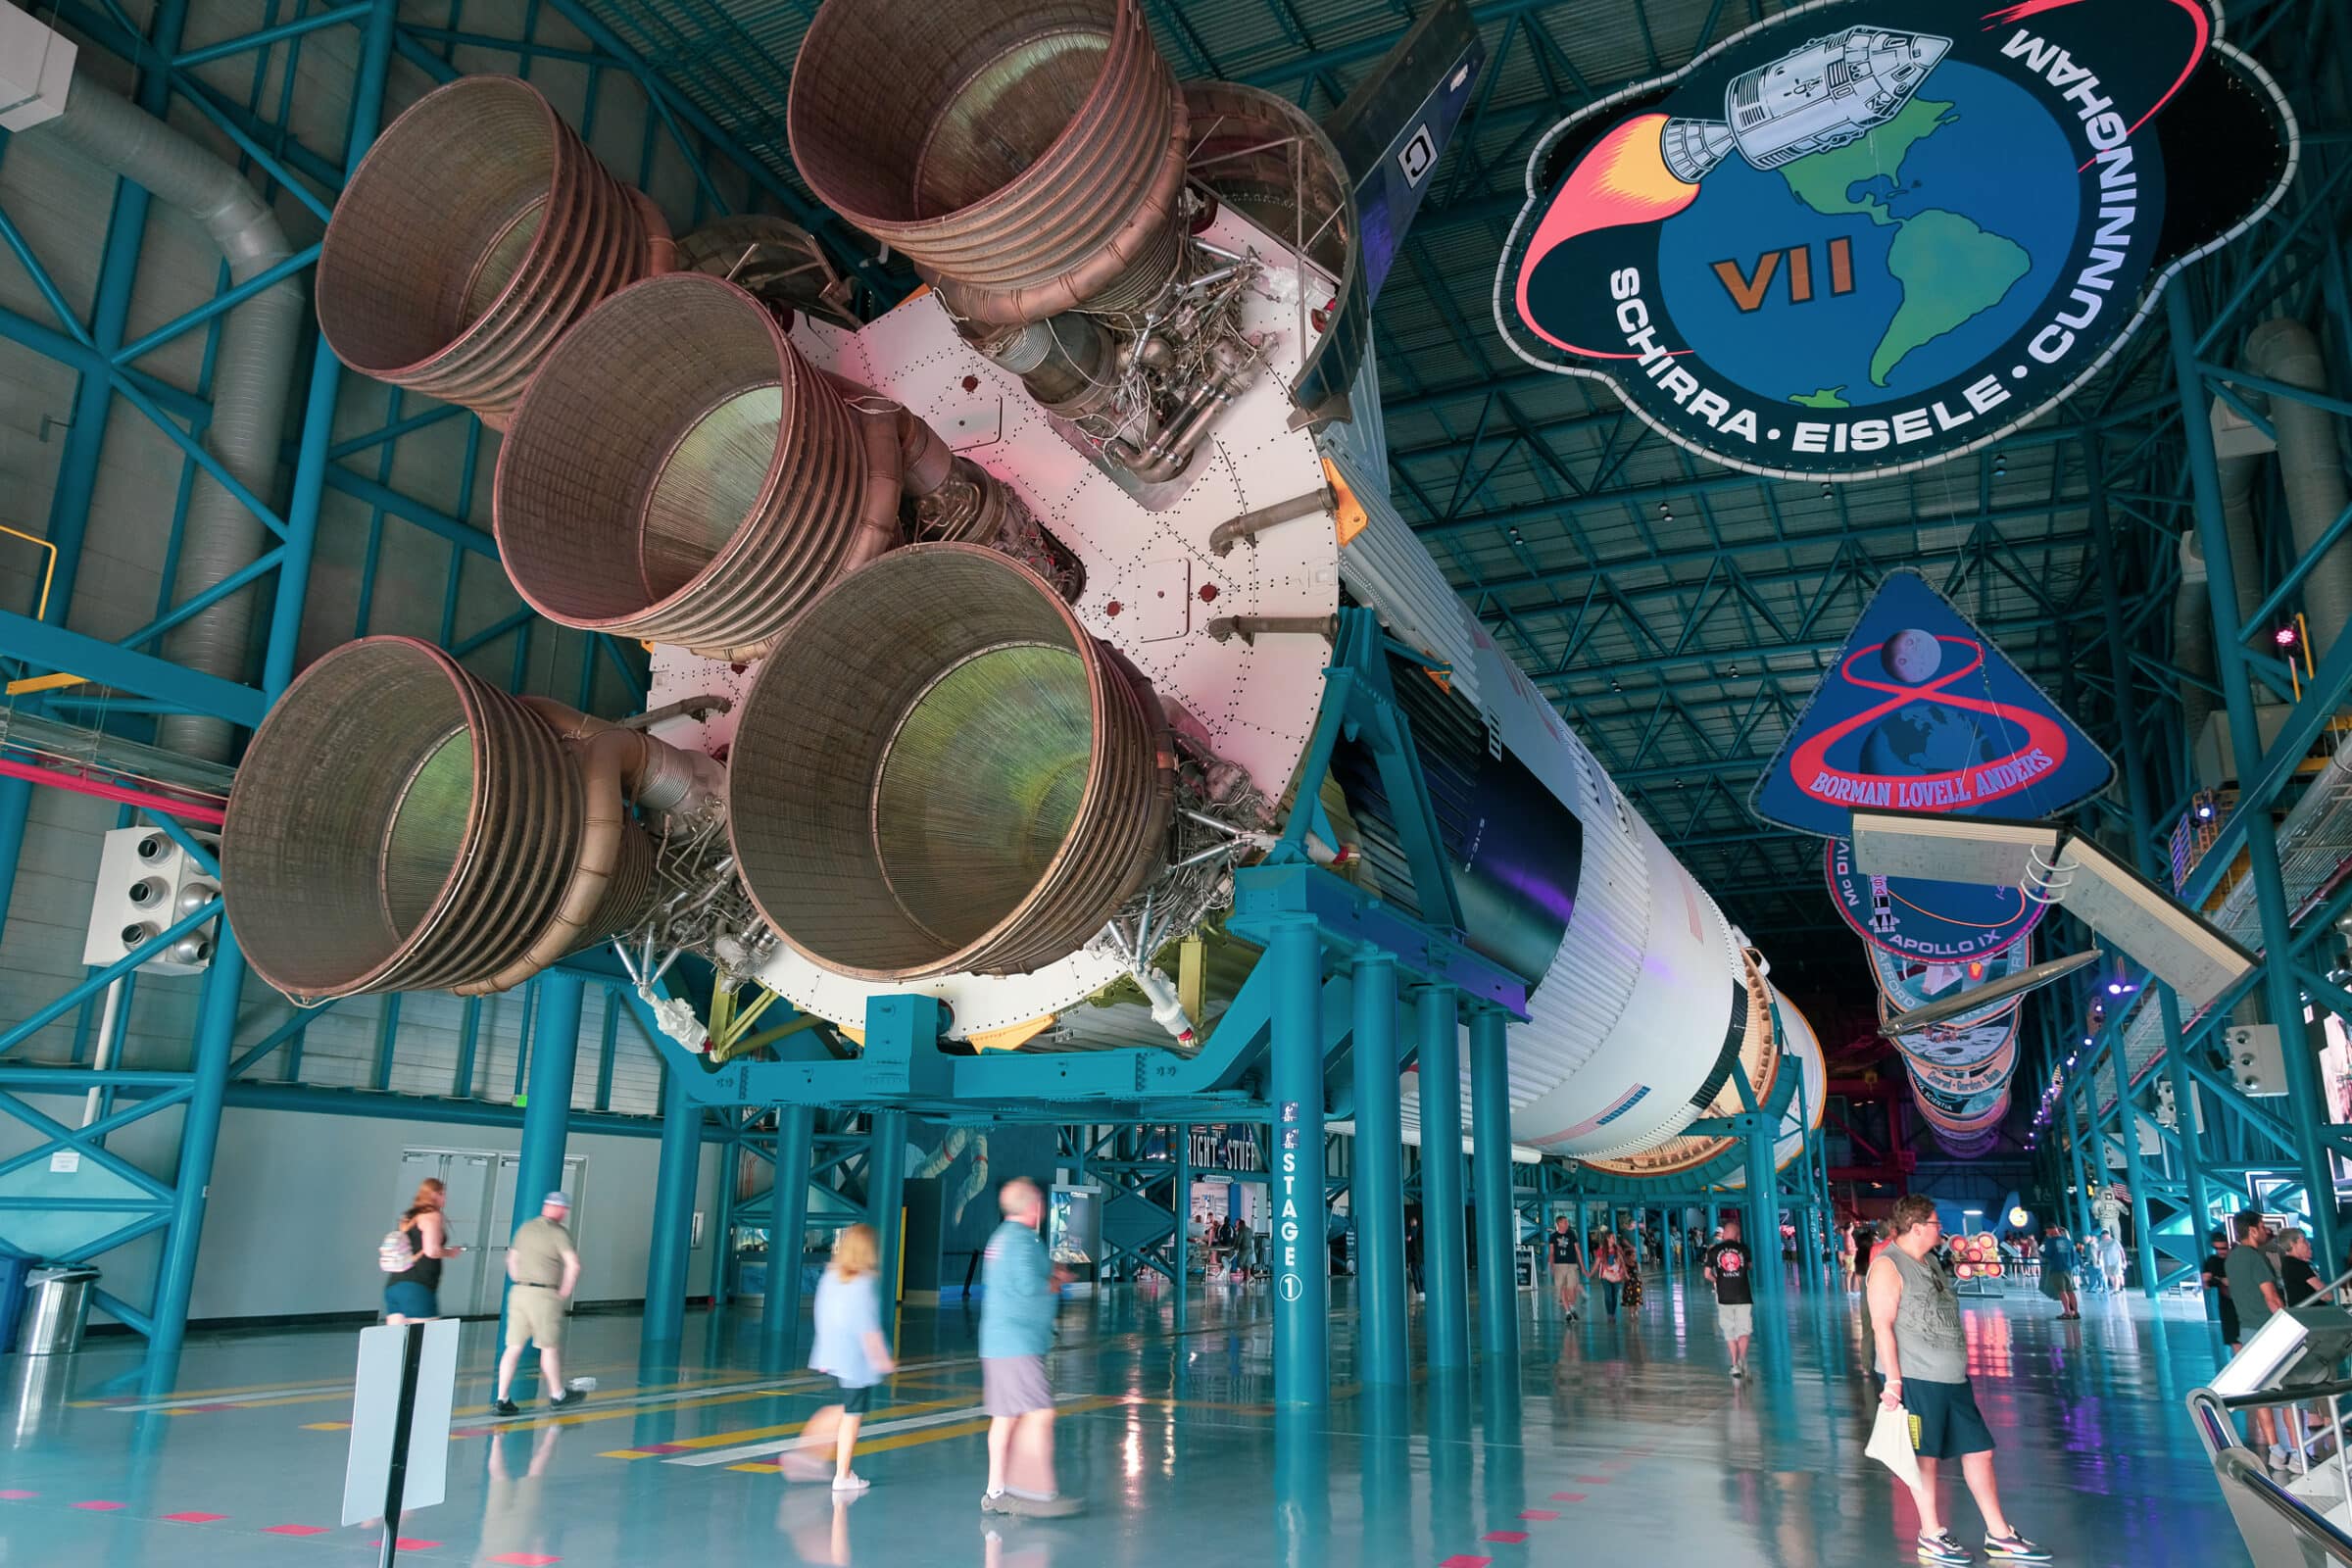 De Saturn V / Apollo raket, de krachtigste raket ooit gebouwd | Hoogtepunten roadtrip New York - Key West